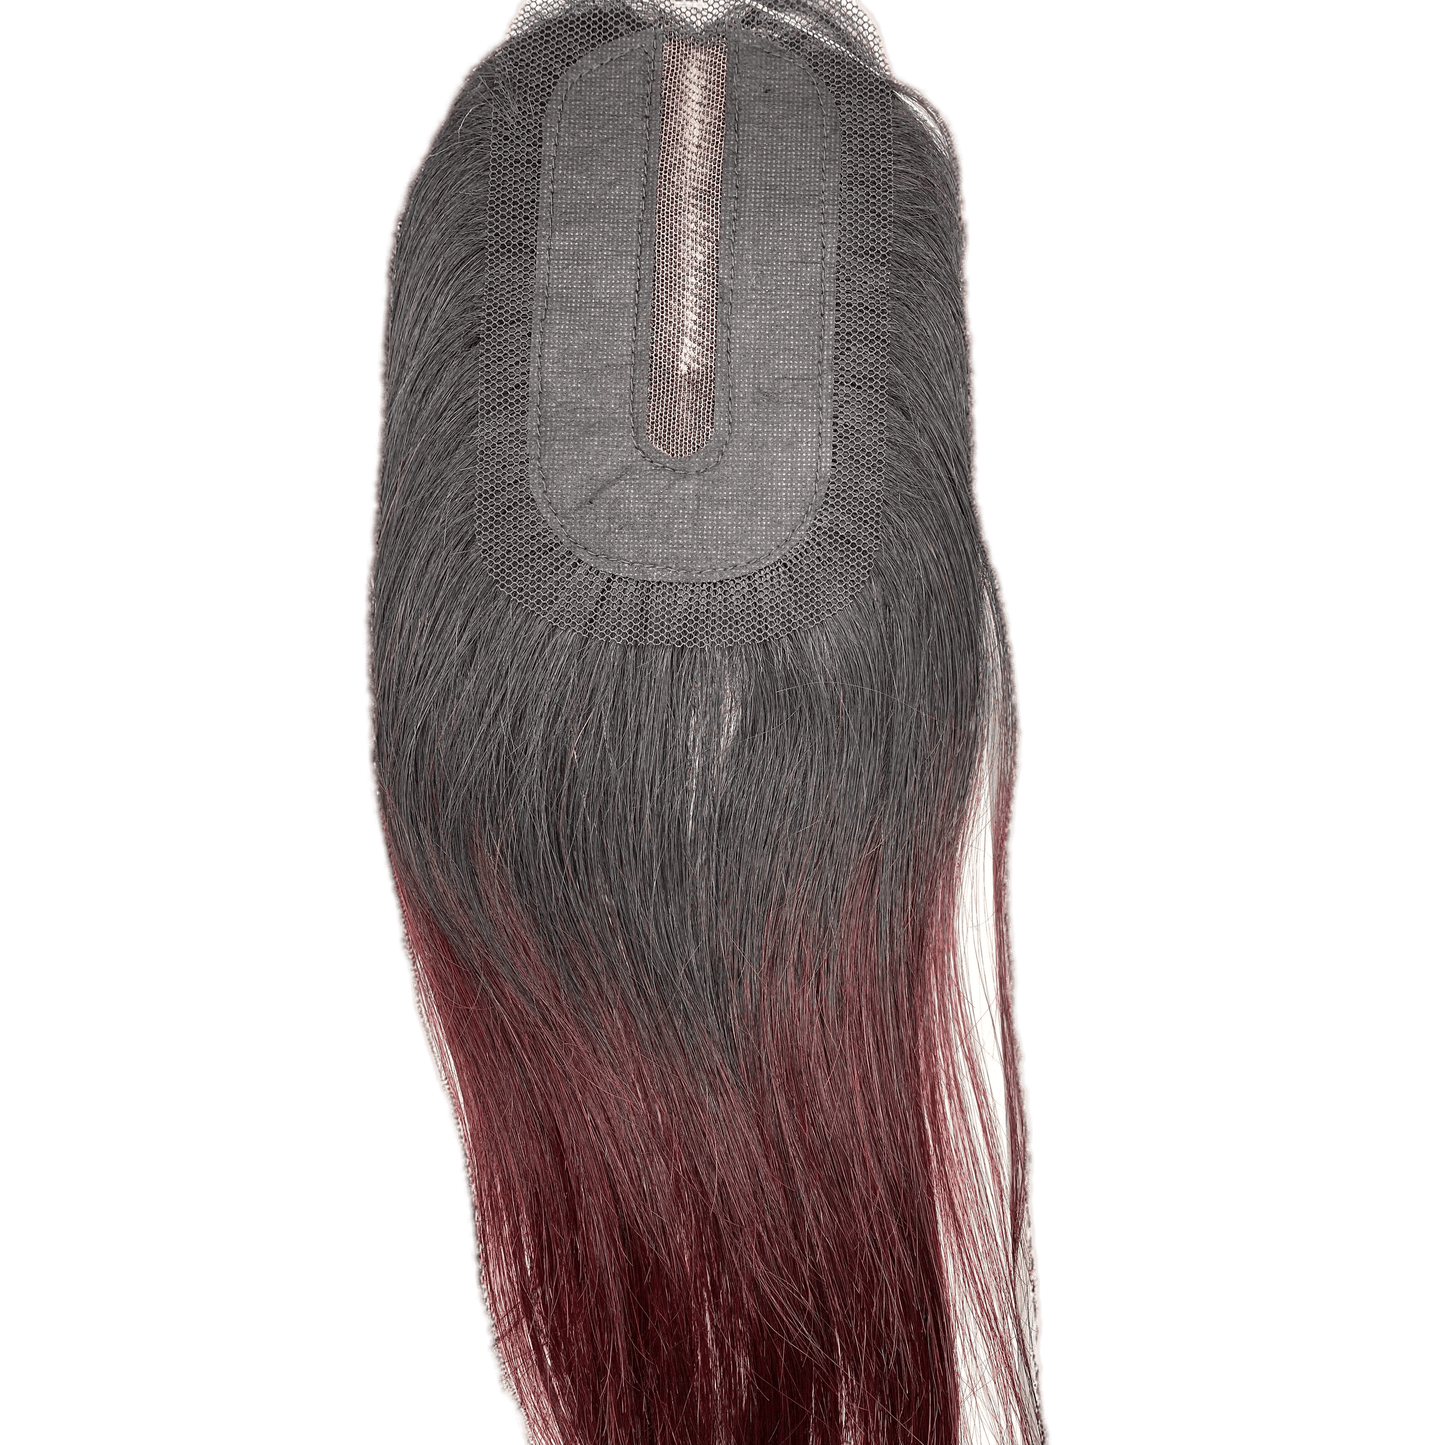 SAGA Popular Yaky 100% Human Hair Lace Closure Yaky 12" (OT99J) - VIP Extensions